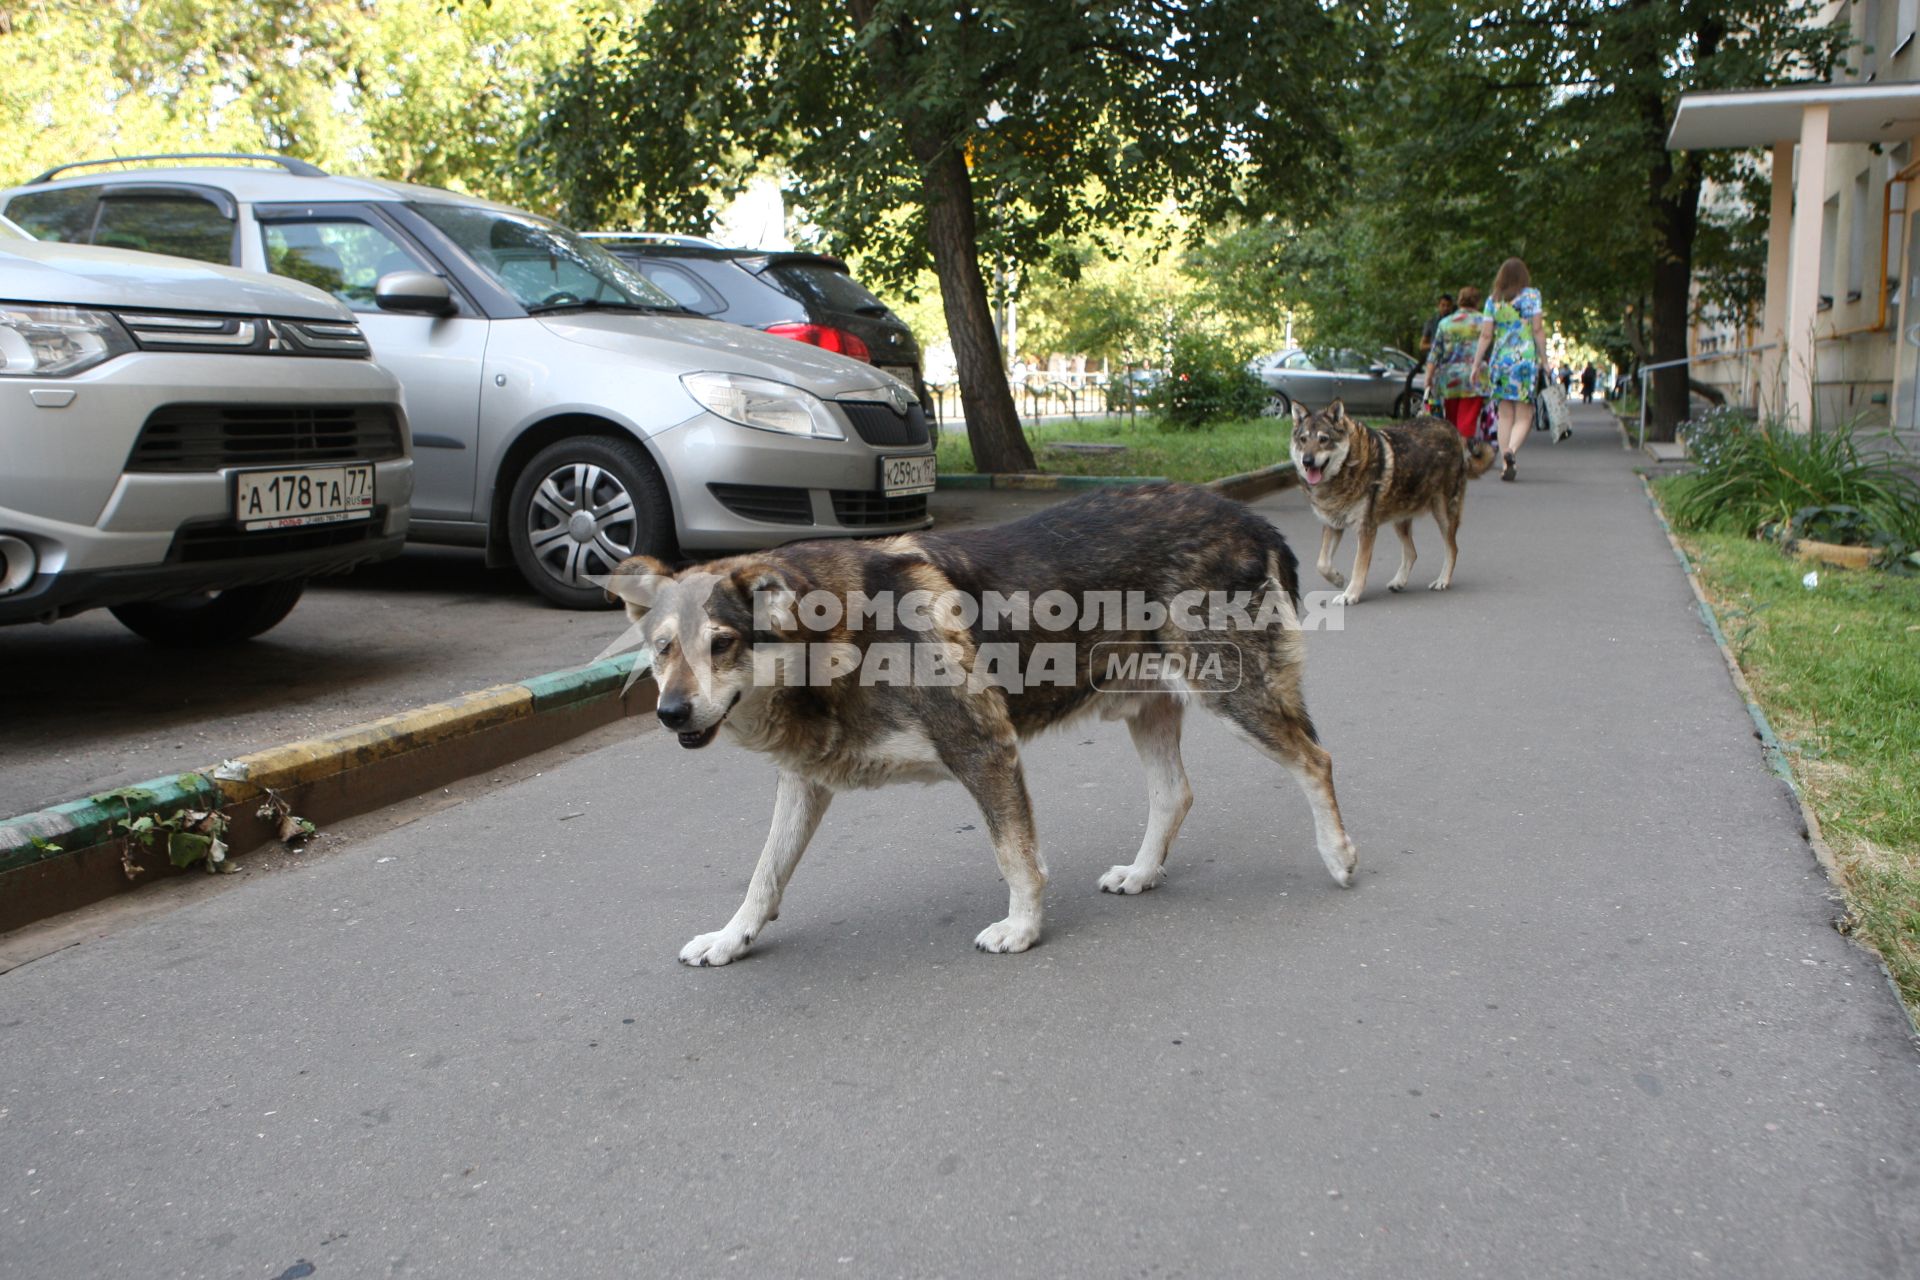 Москва. Бродячие собаки.